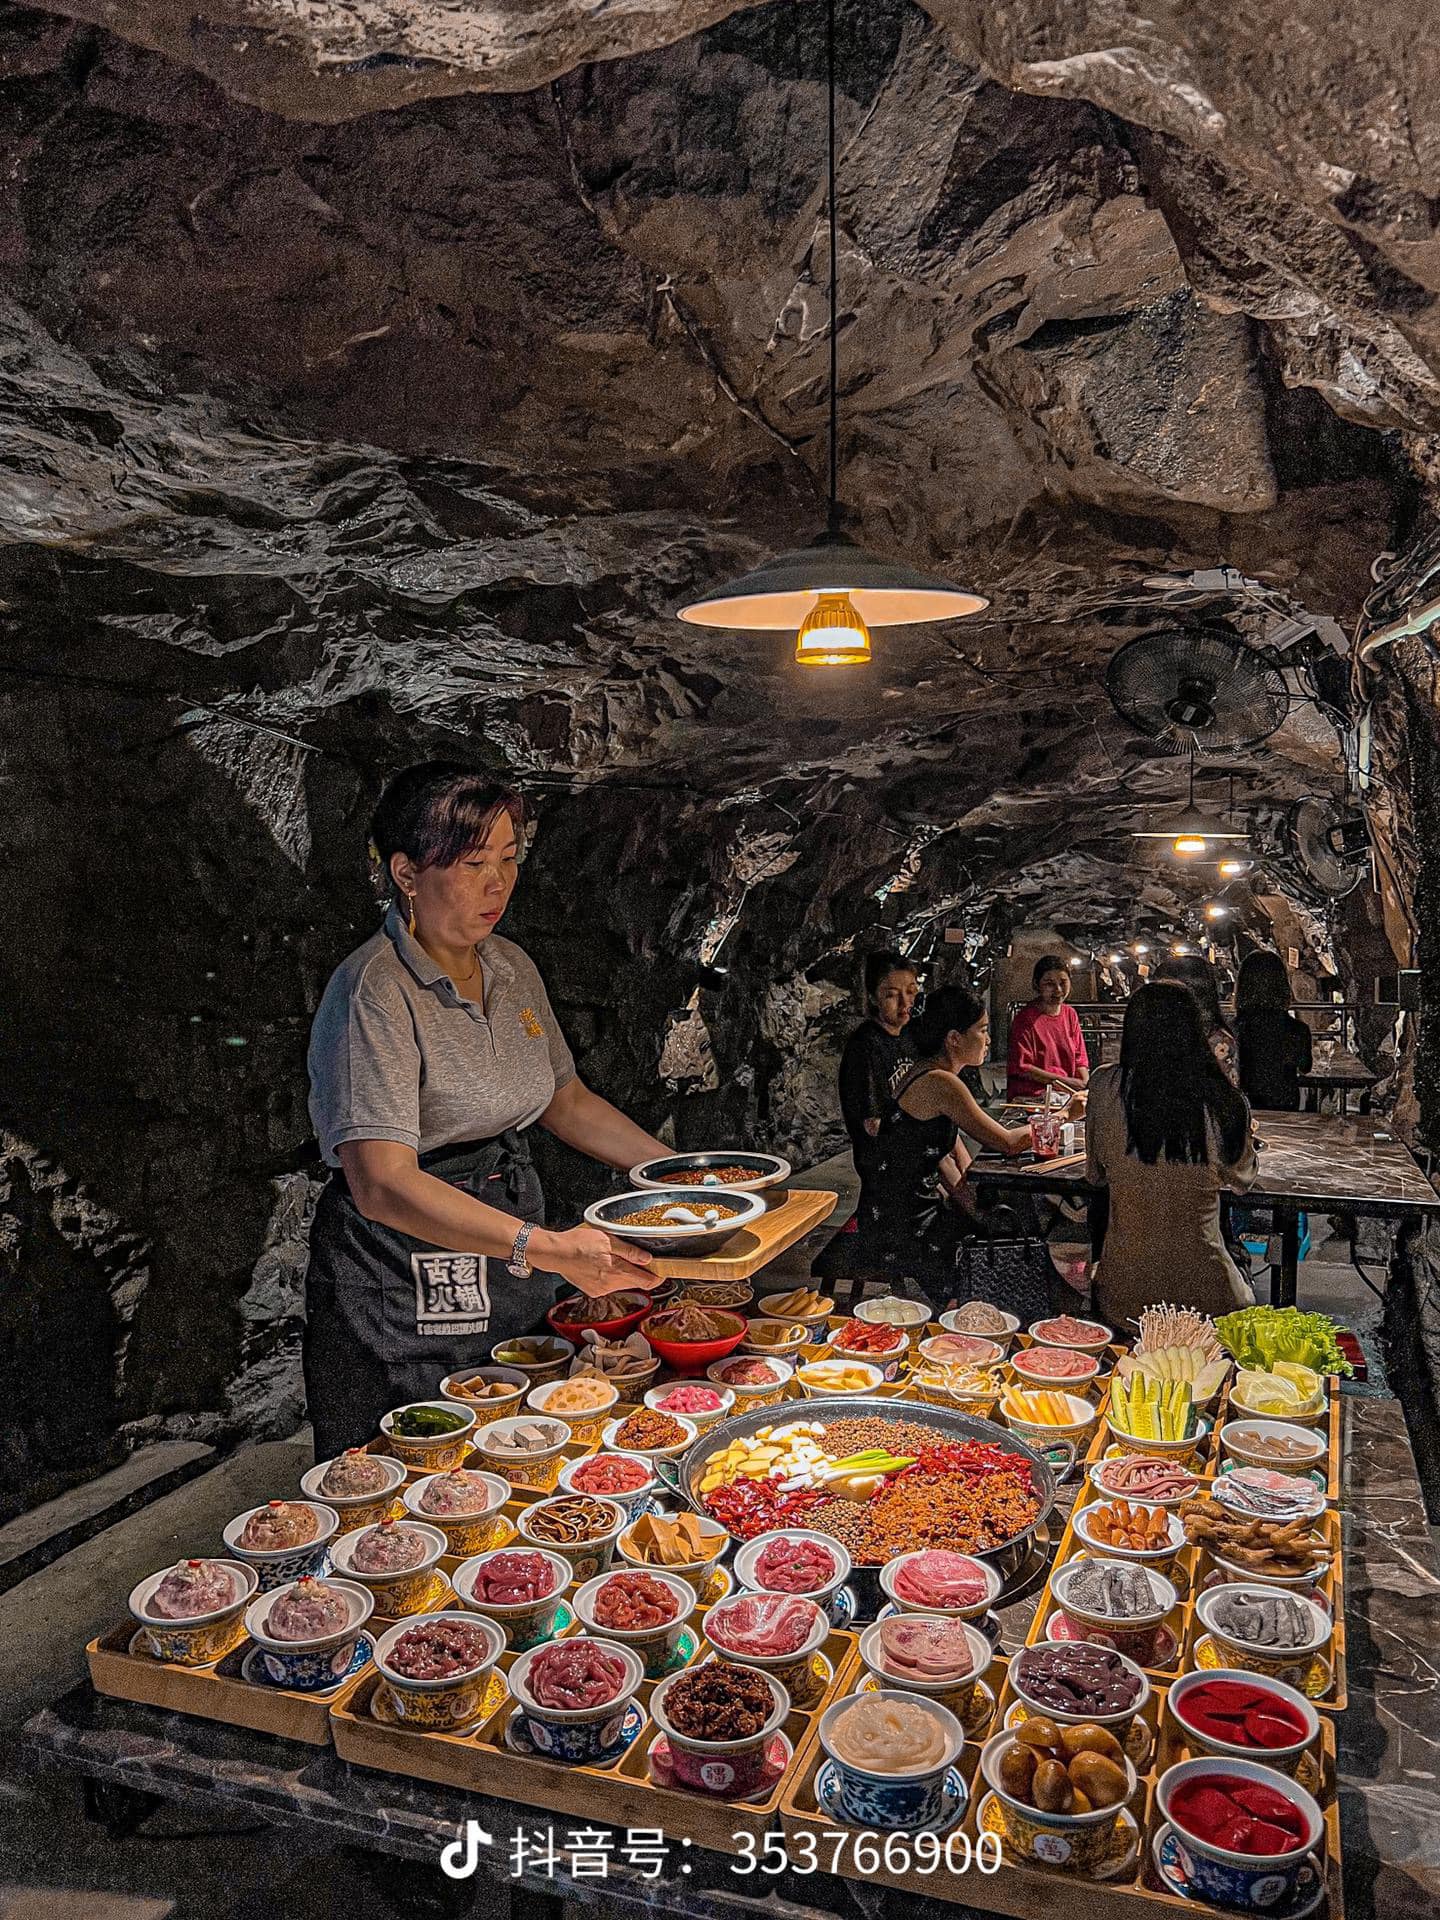 Độc đáo với nhà hàng lẩu dưới hầm trú ẩn hút khách tại Trùng Khánh, Trung Quốc - Ảnh 3.